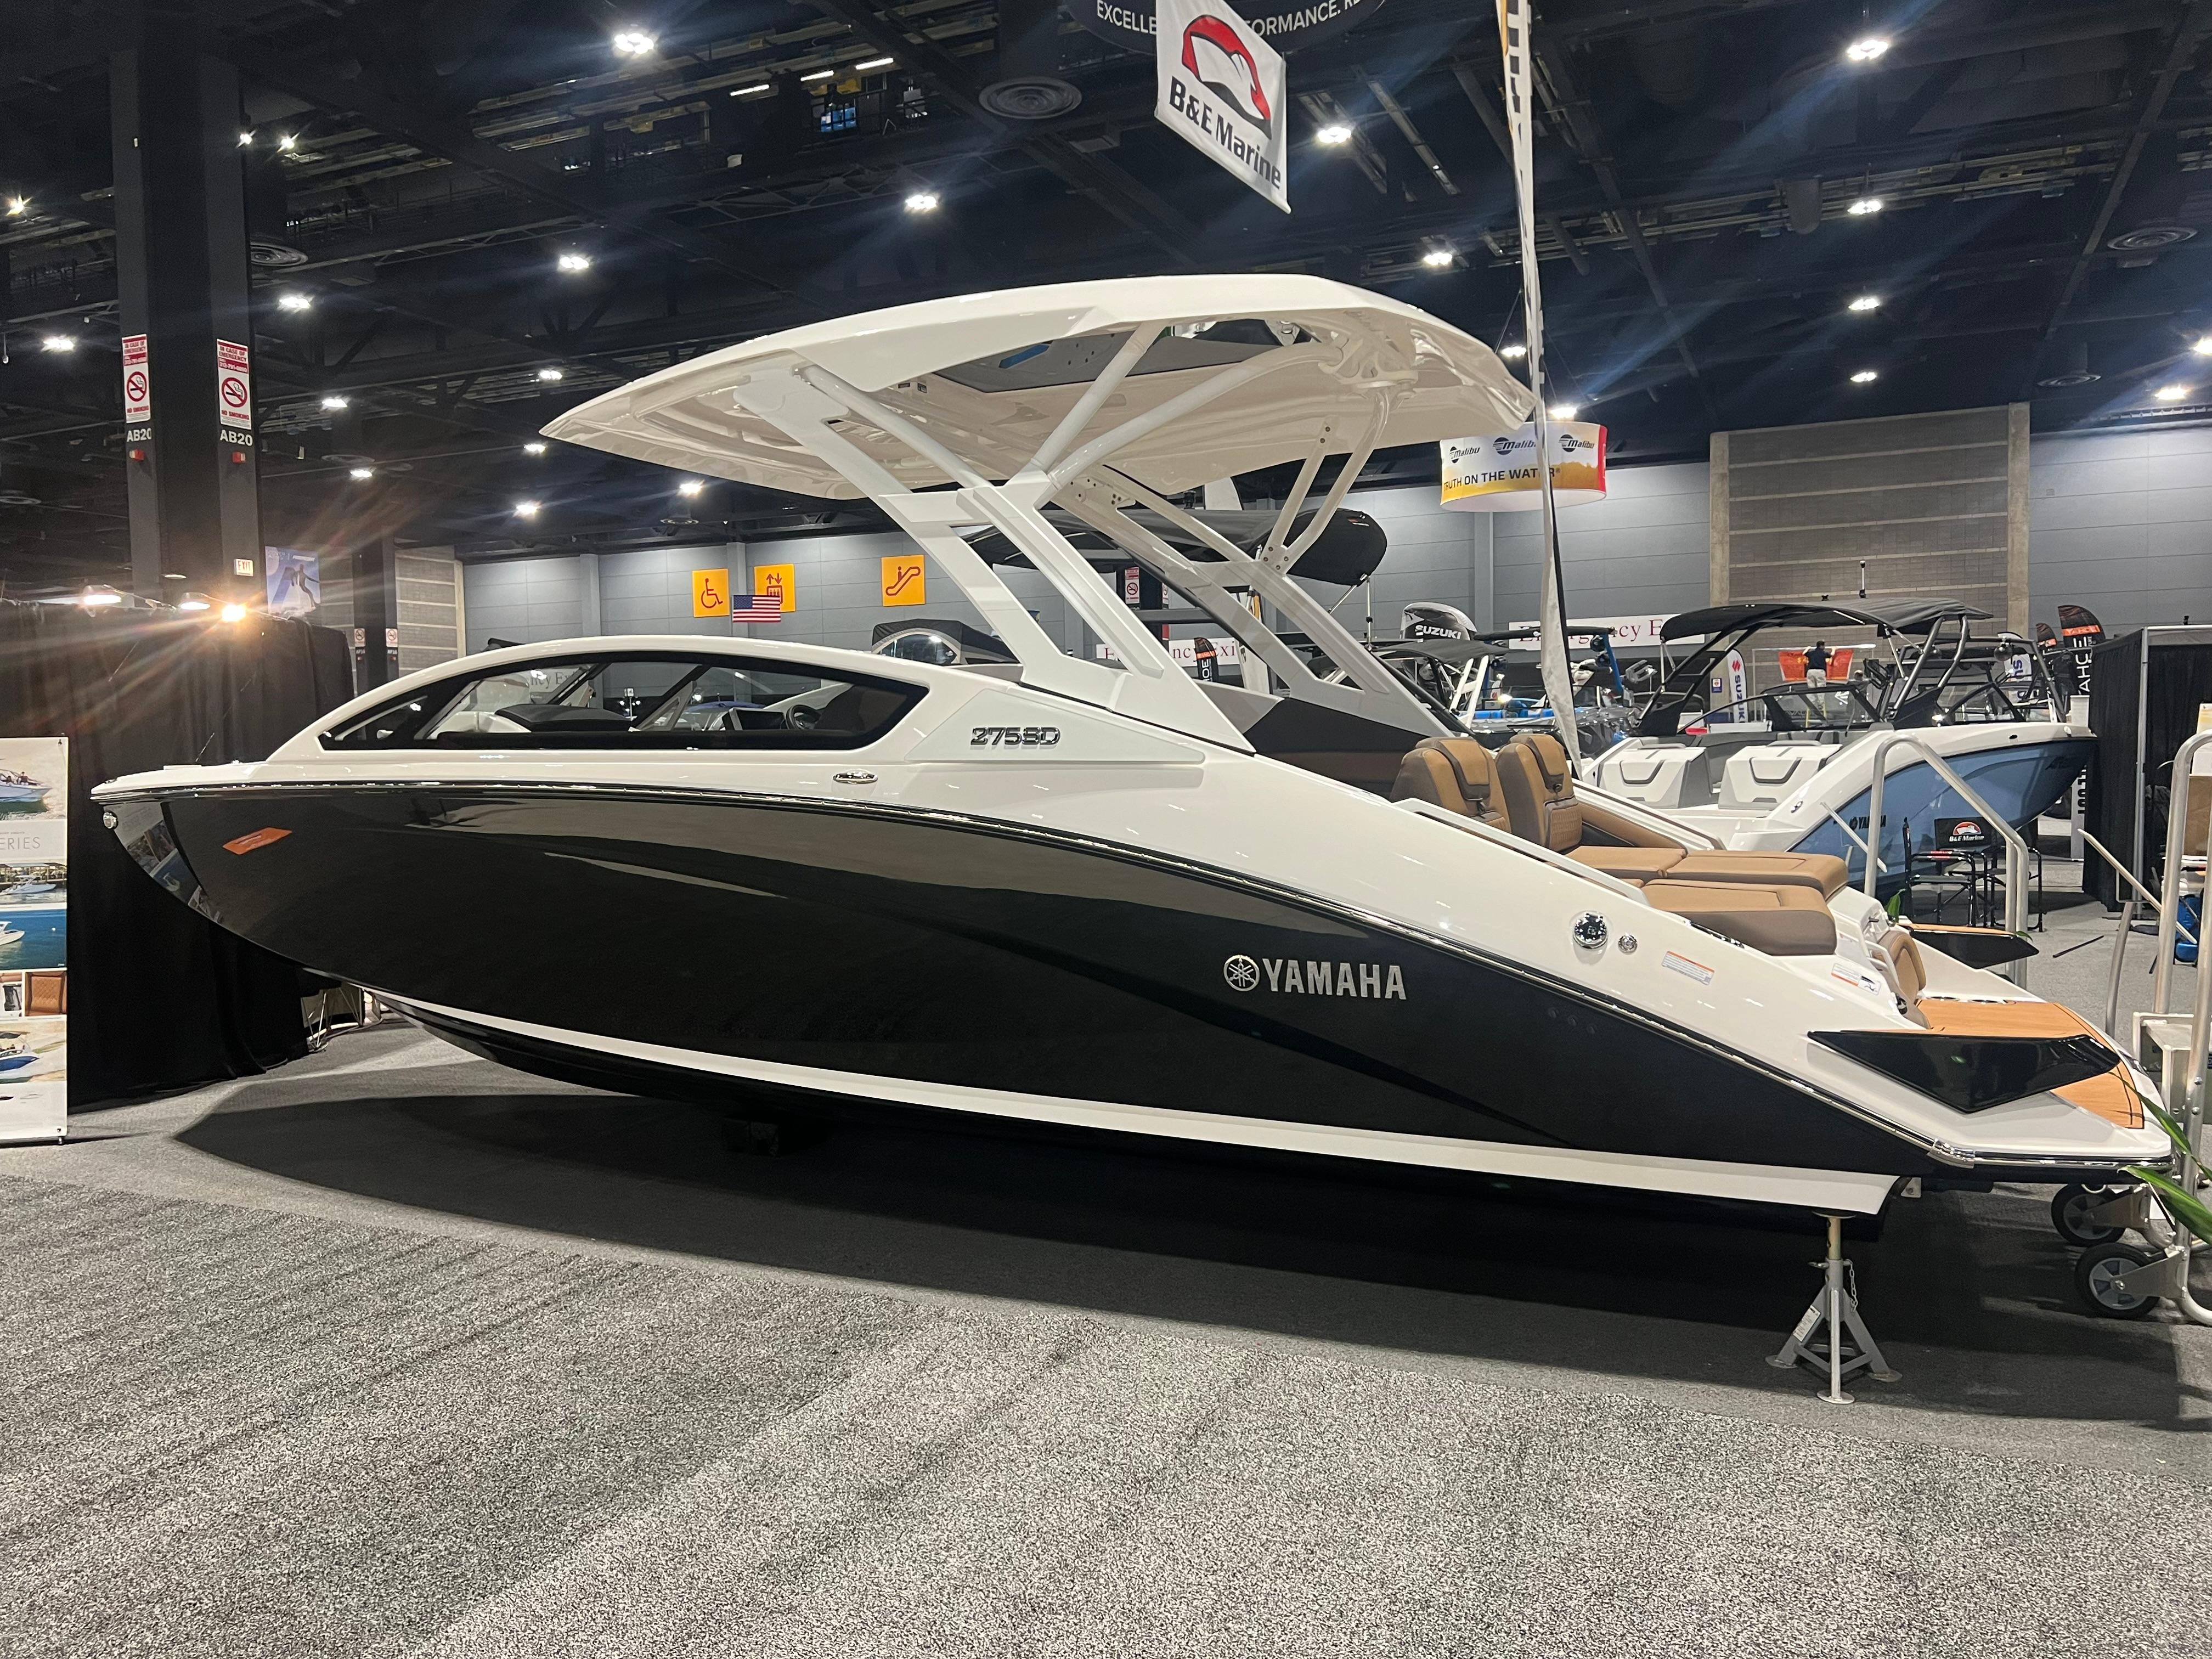 New 2024 Yamaha Boats 275 SD, 46360 Michigan City Boat Trader